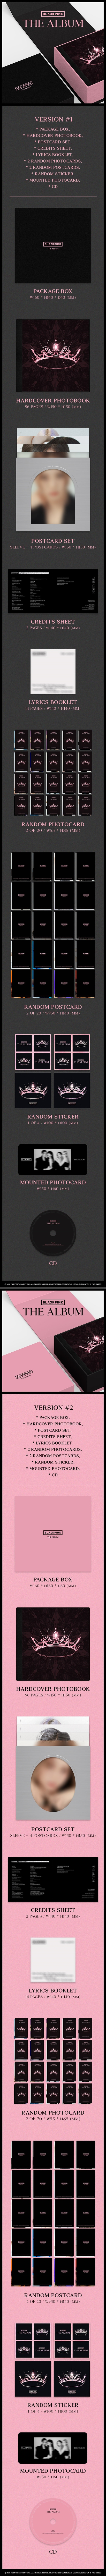 BLACKPINK - 1st Album THE ALBUM